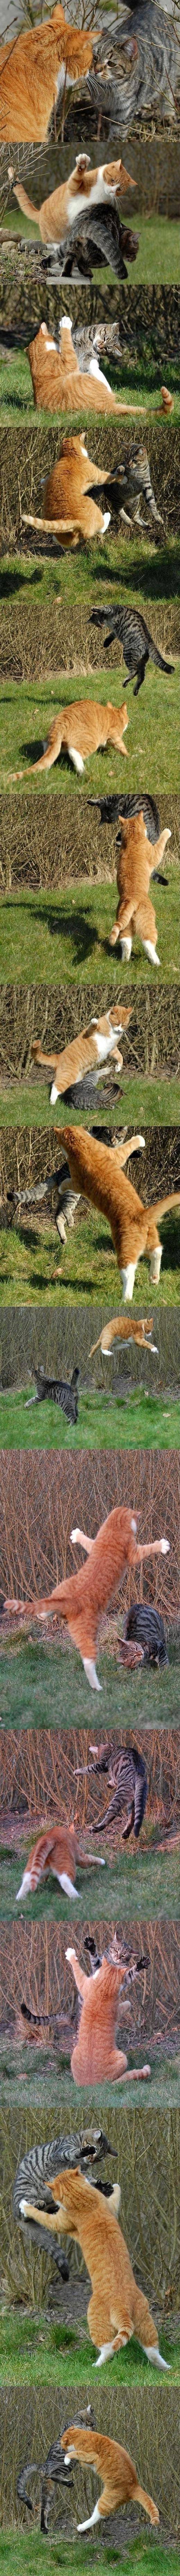 고양이의 서열싸움.jpg | 인스티즈